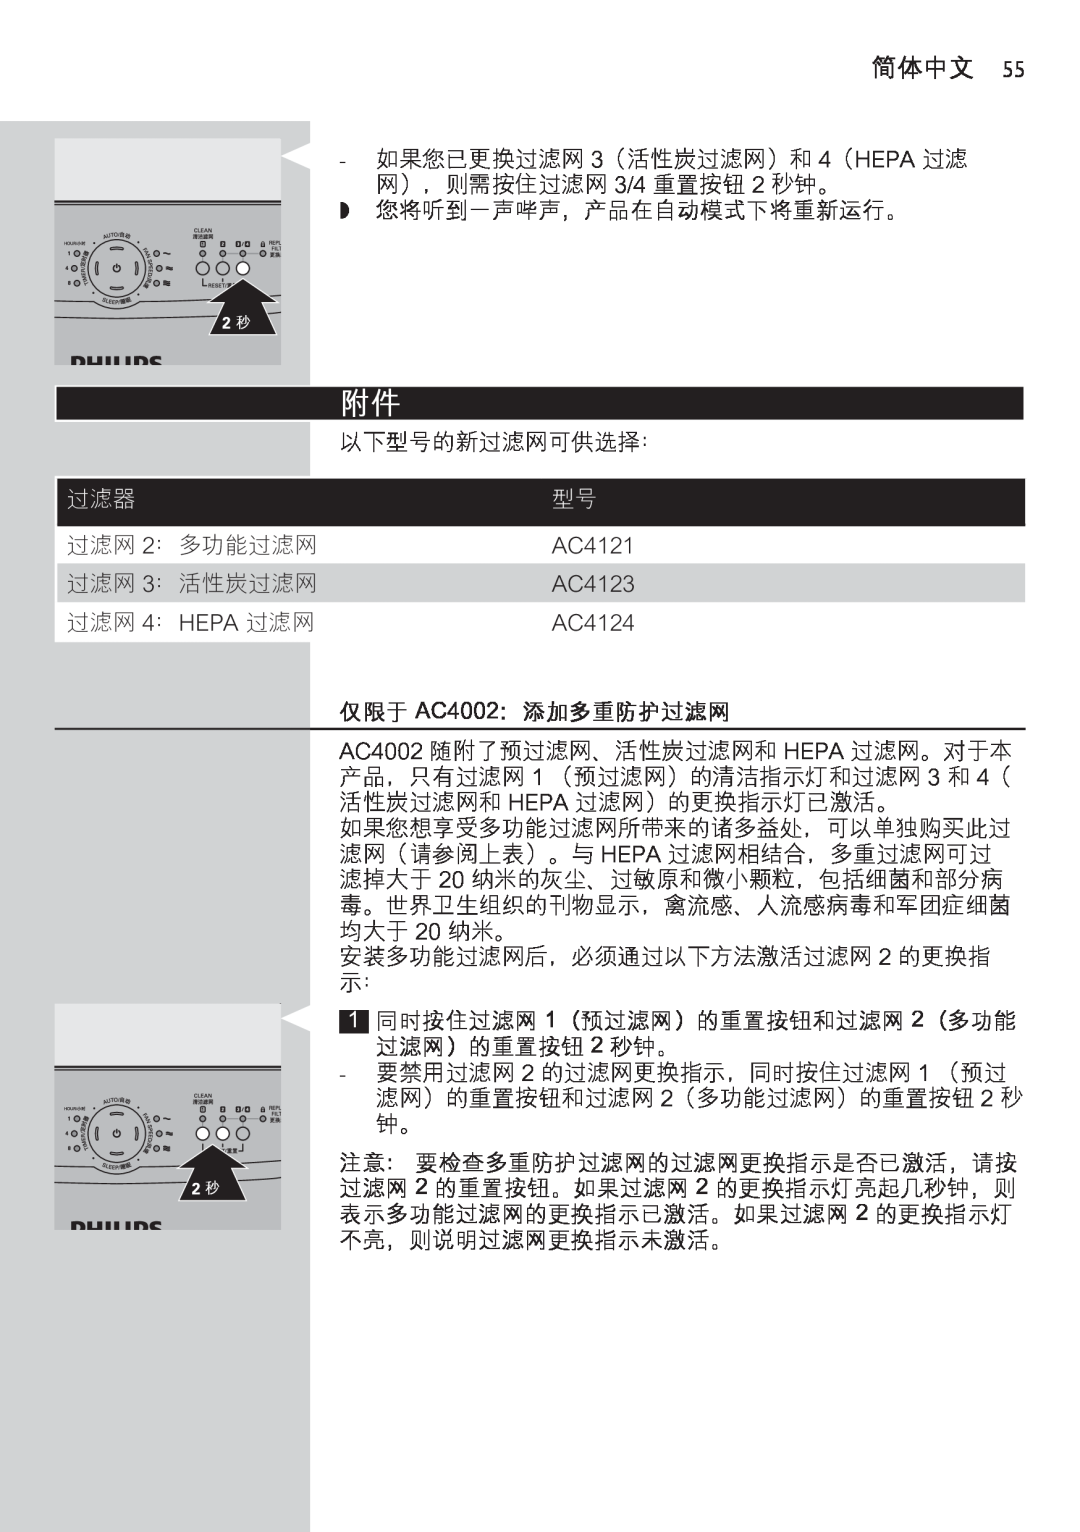 Philips manual 仅限于 AC4002：添加多重防护过滤网, 简体中文 